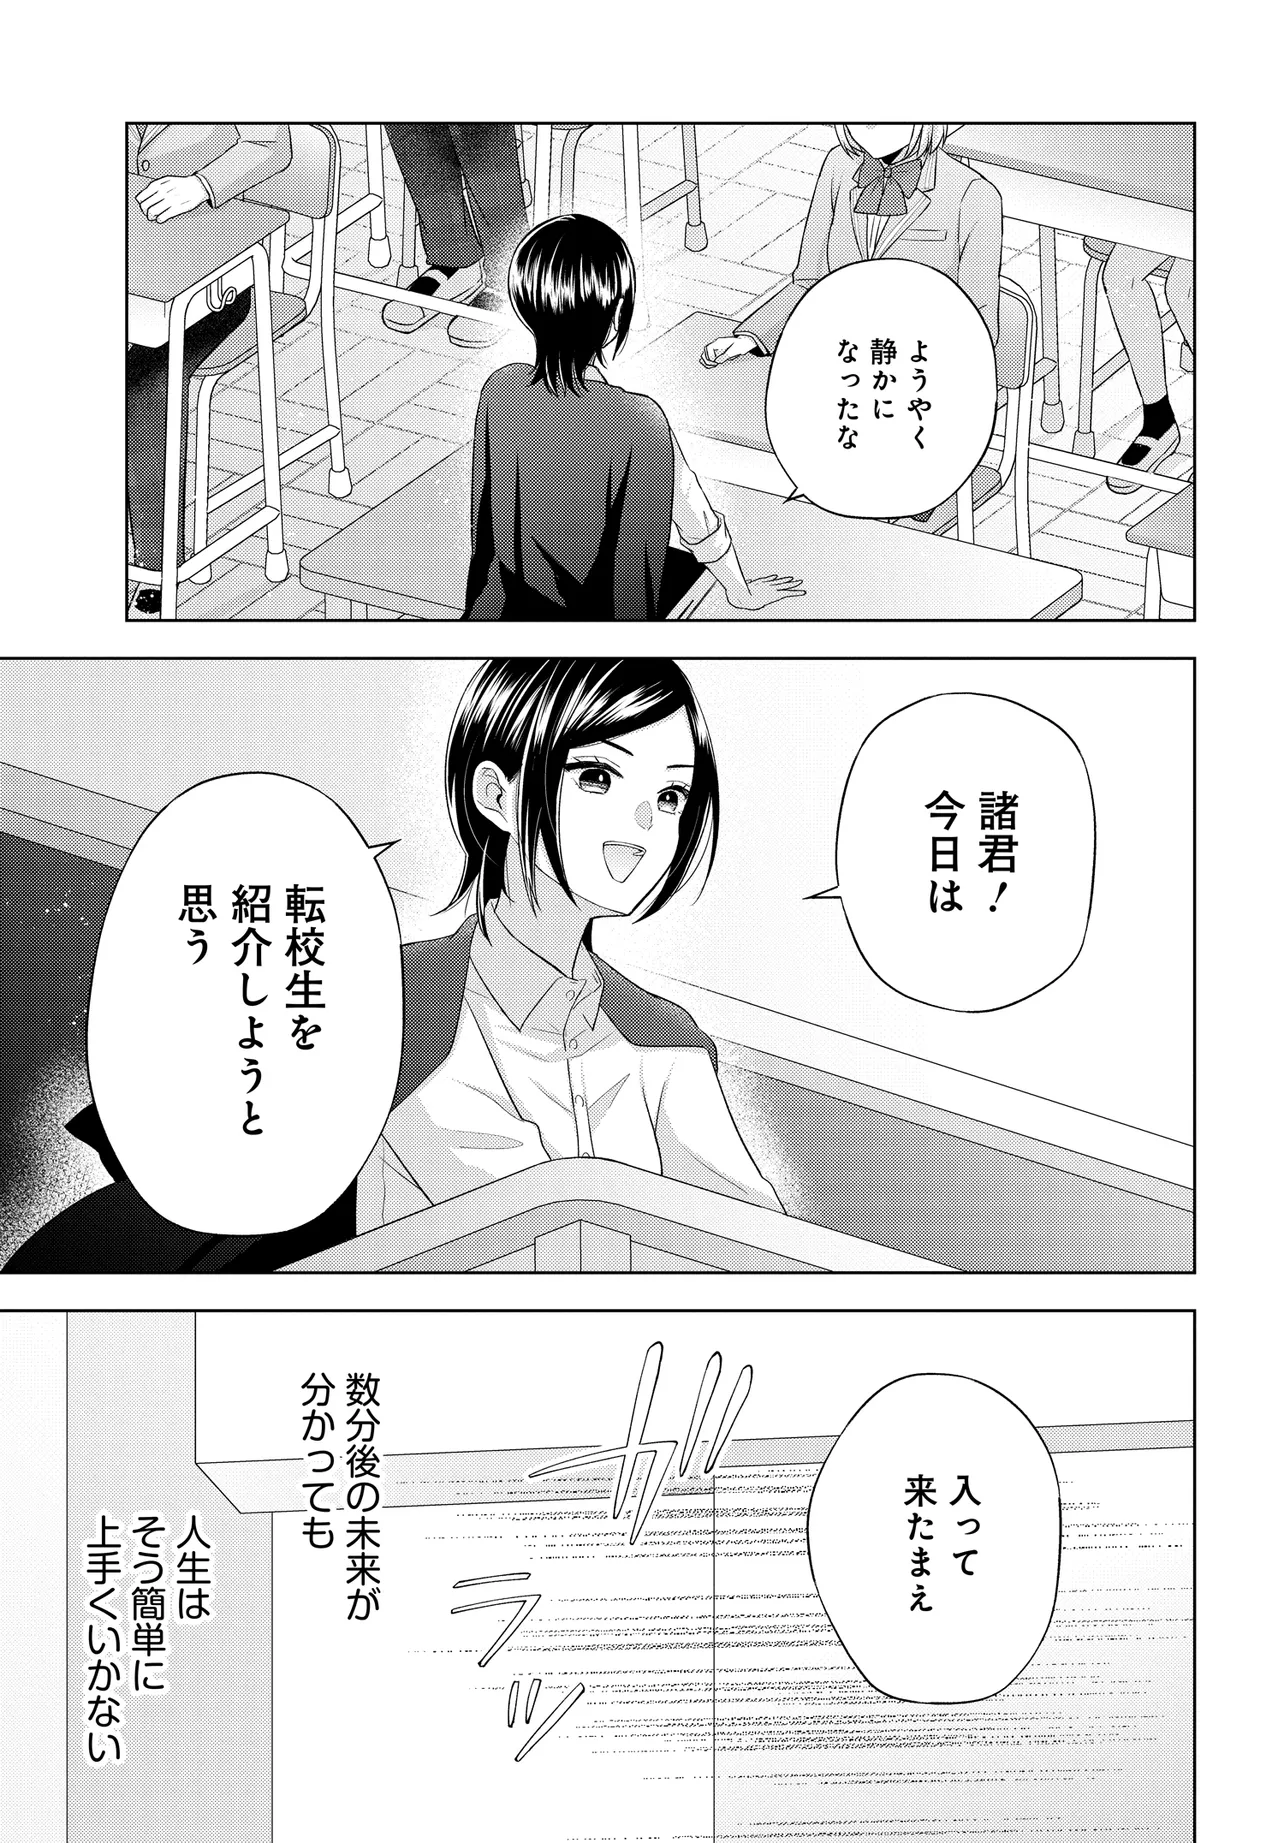 Suufun Go no Mirai ga Wakaru you ni Natta kedo, Onnagokoro wa Wakaranai. - Chapter 1 - Page 43